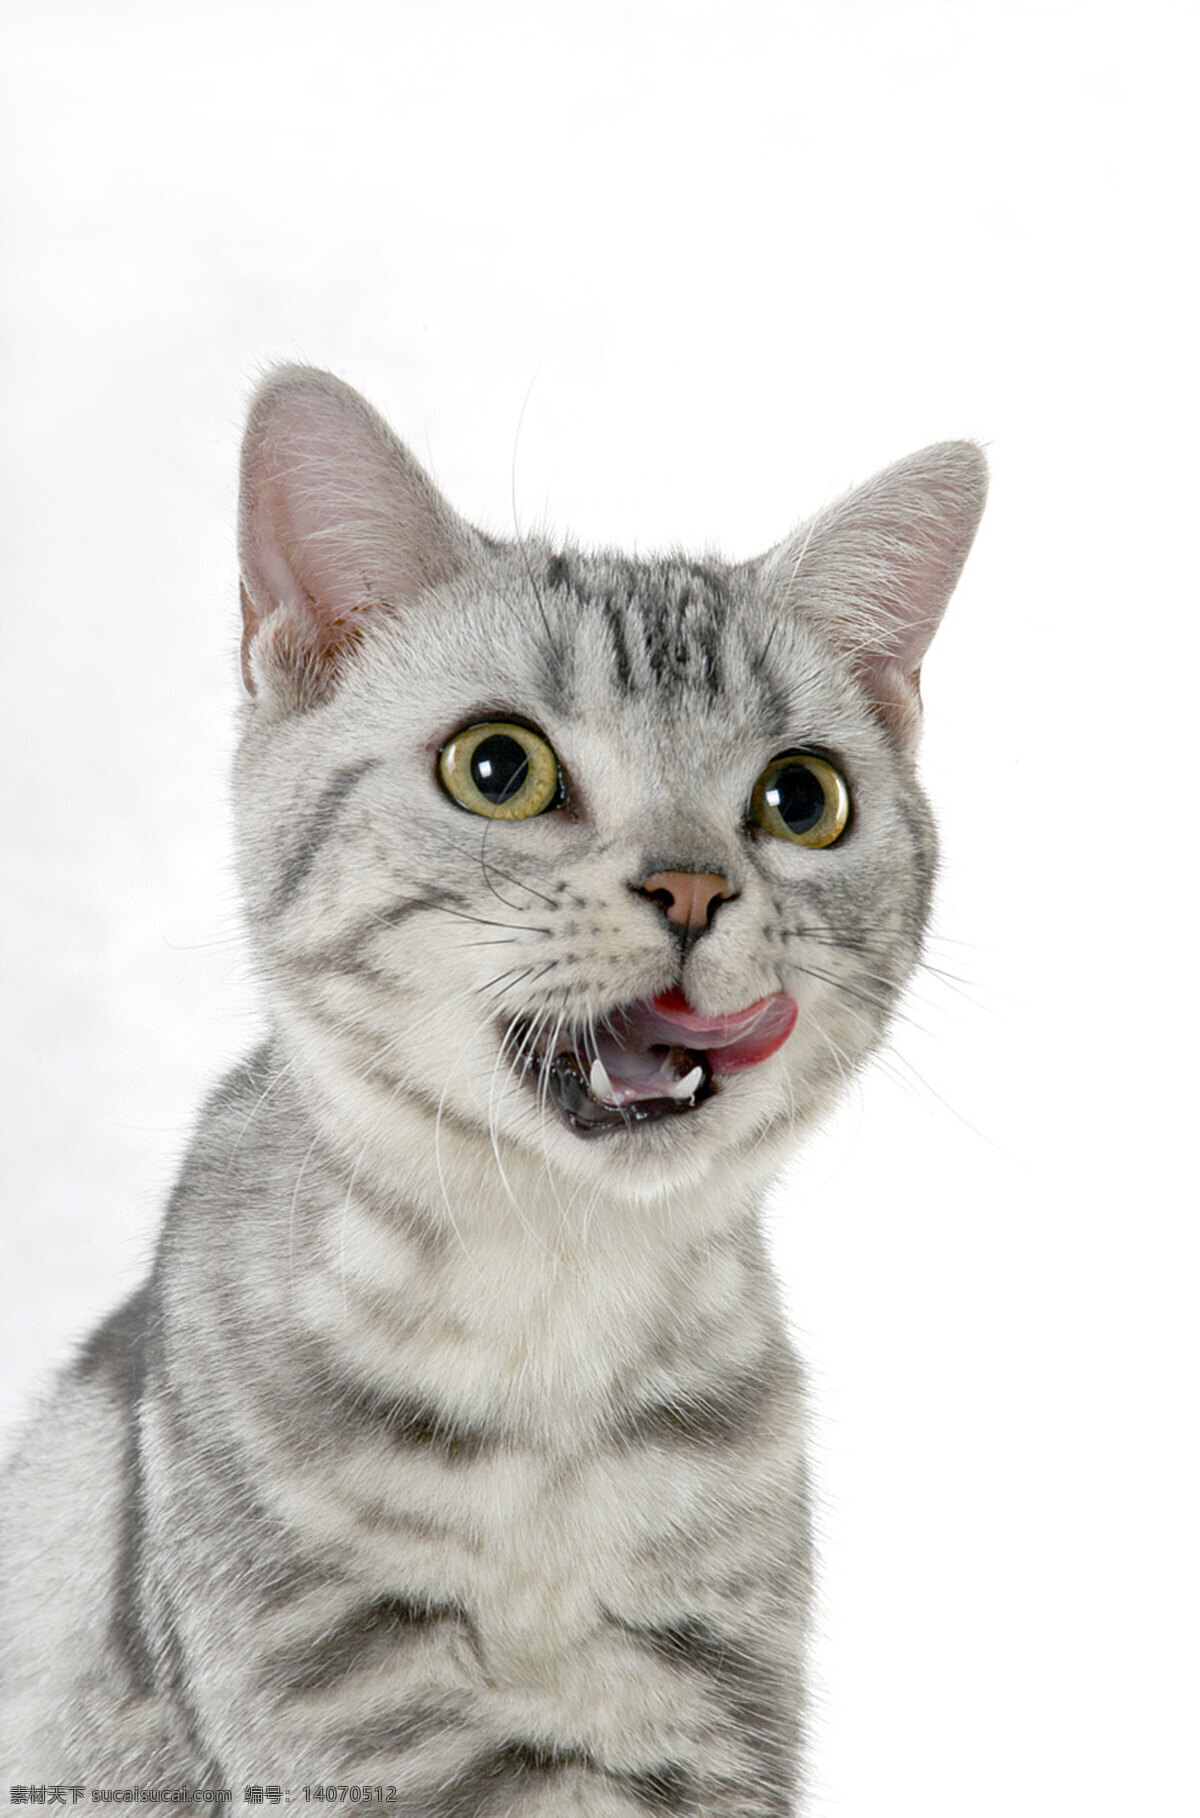 猫咪 高冷 猫眼 胡须 生物世界 家禽家畜